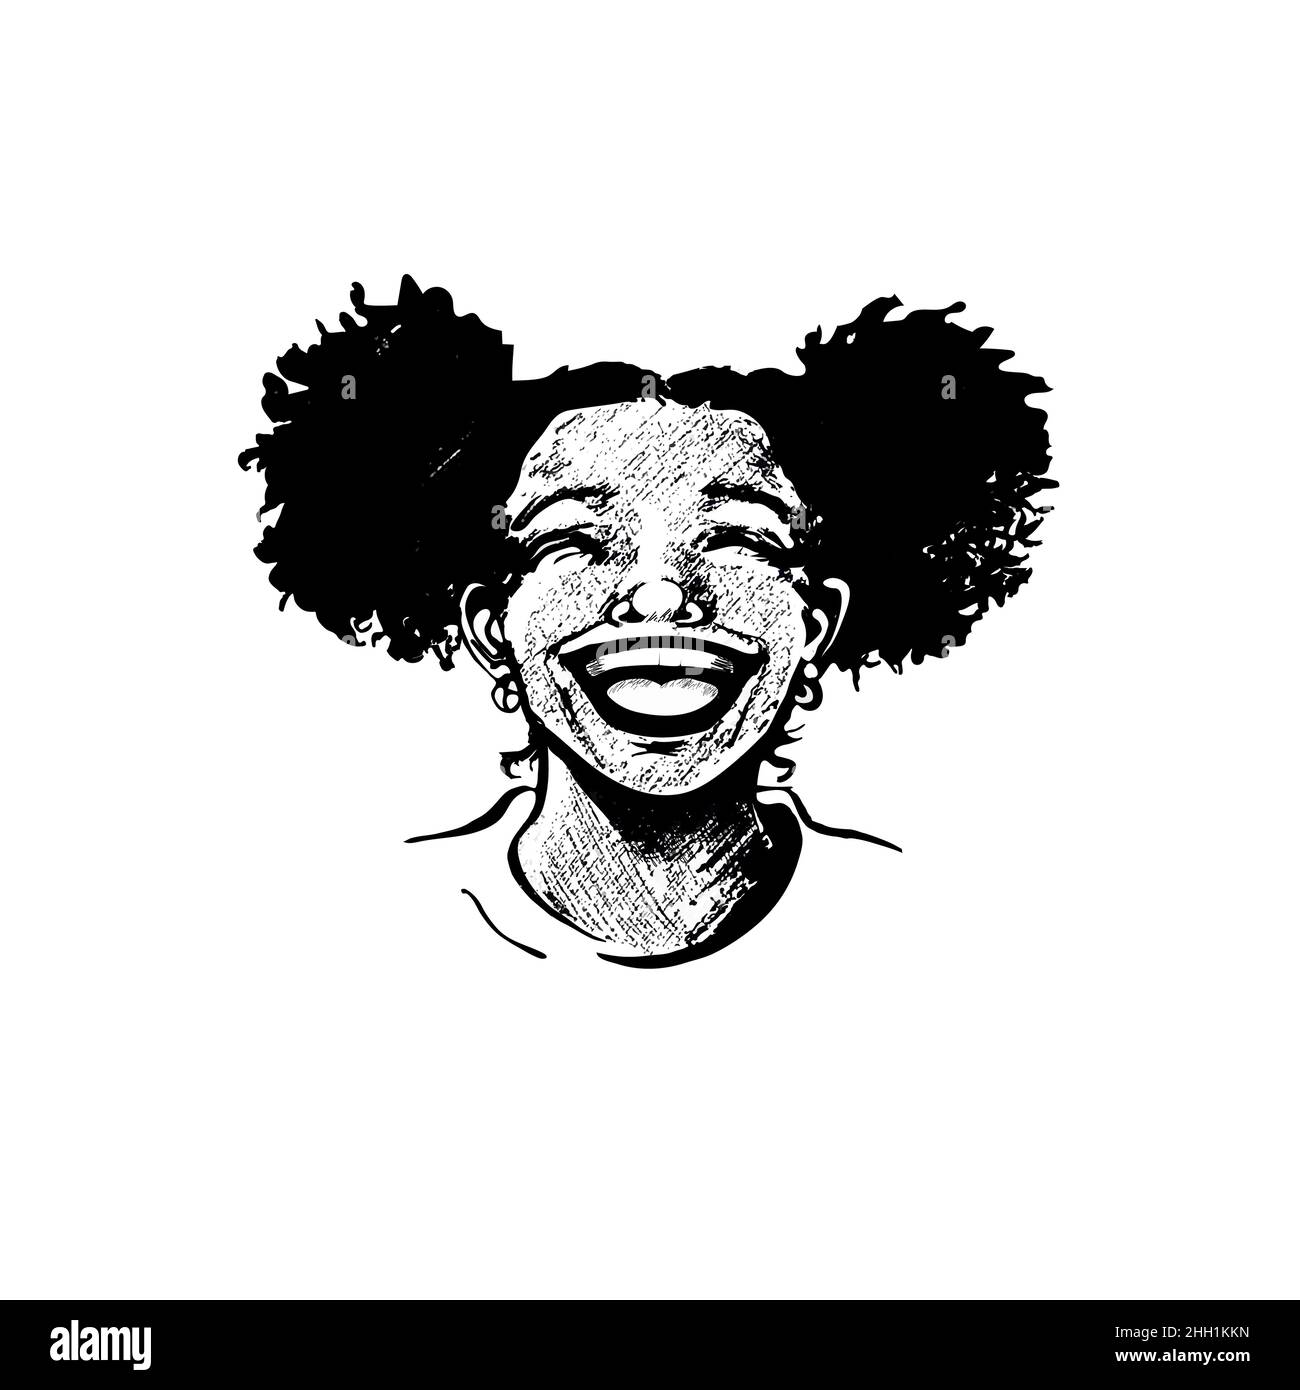 Jeune femme afro-américaine mignonne, adolescente, riant avec cœur, lèvres larges ouvertes, dents brillantes,cheveux bouclés en picots.Portrait réaliste dessiné à la main Illustration de Vecteur